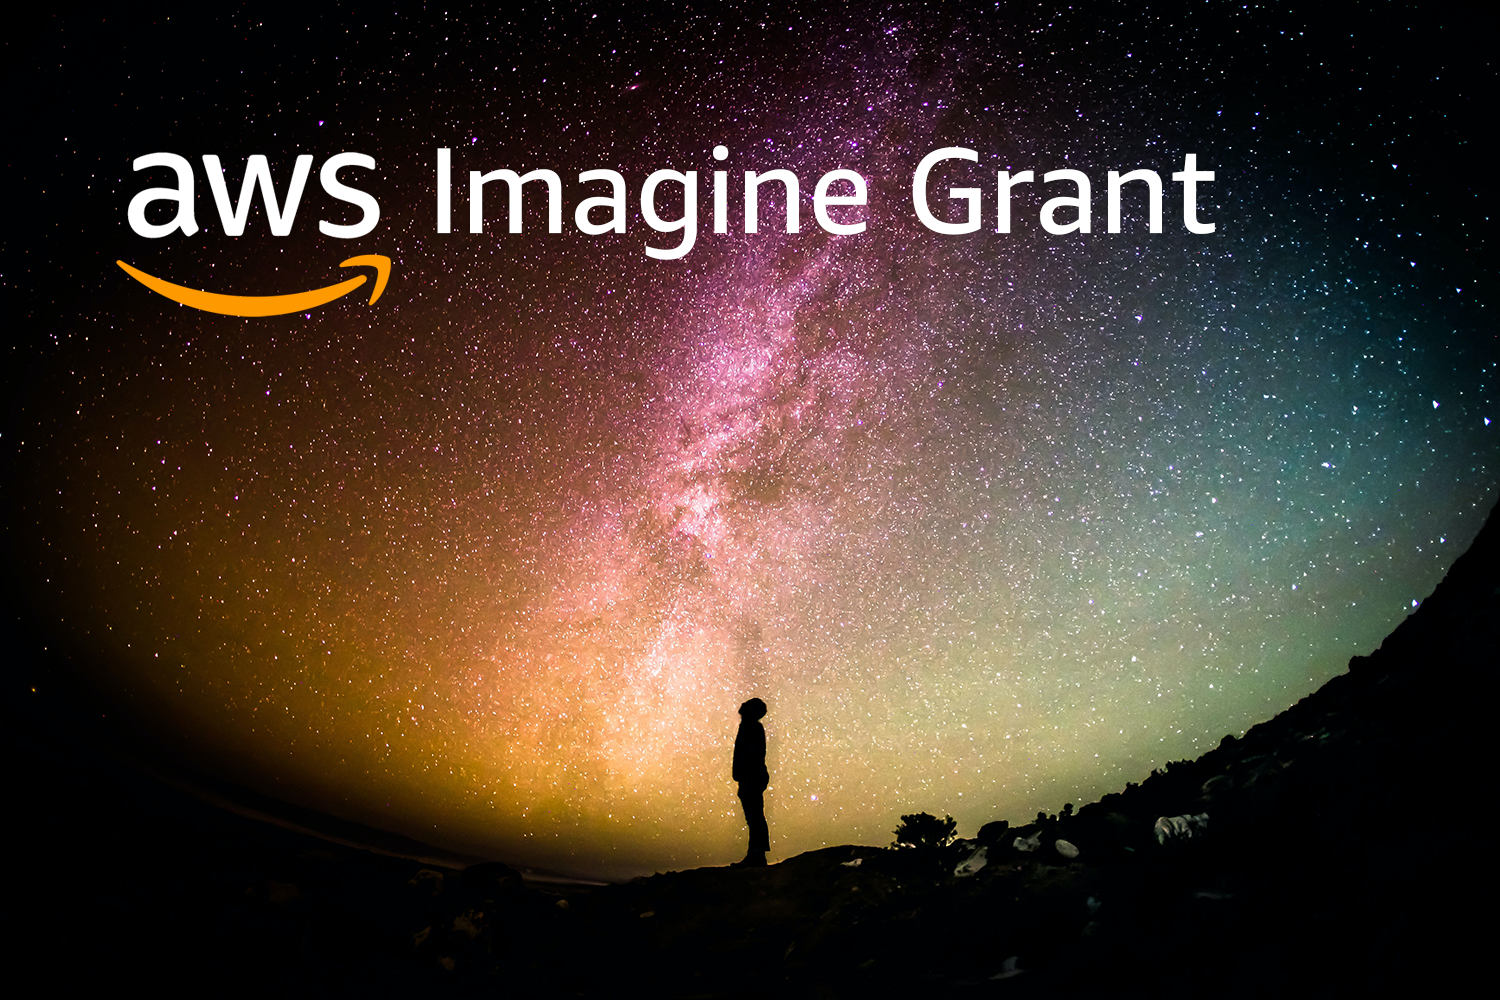 Tips for Landing Amazon’s $250,000 AWS Imagine Grant